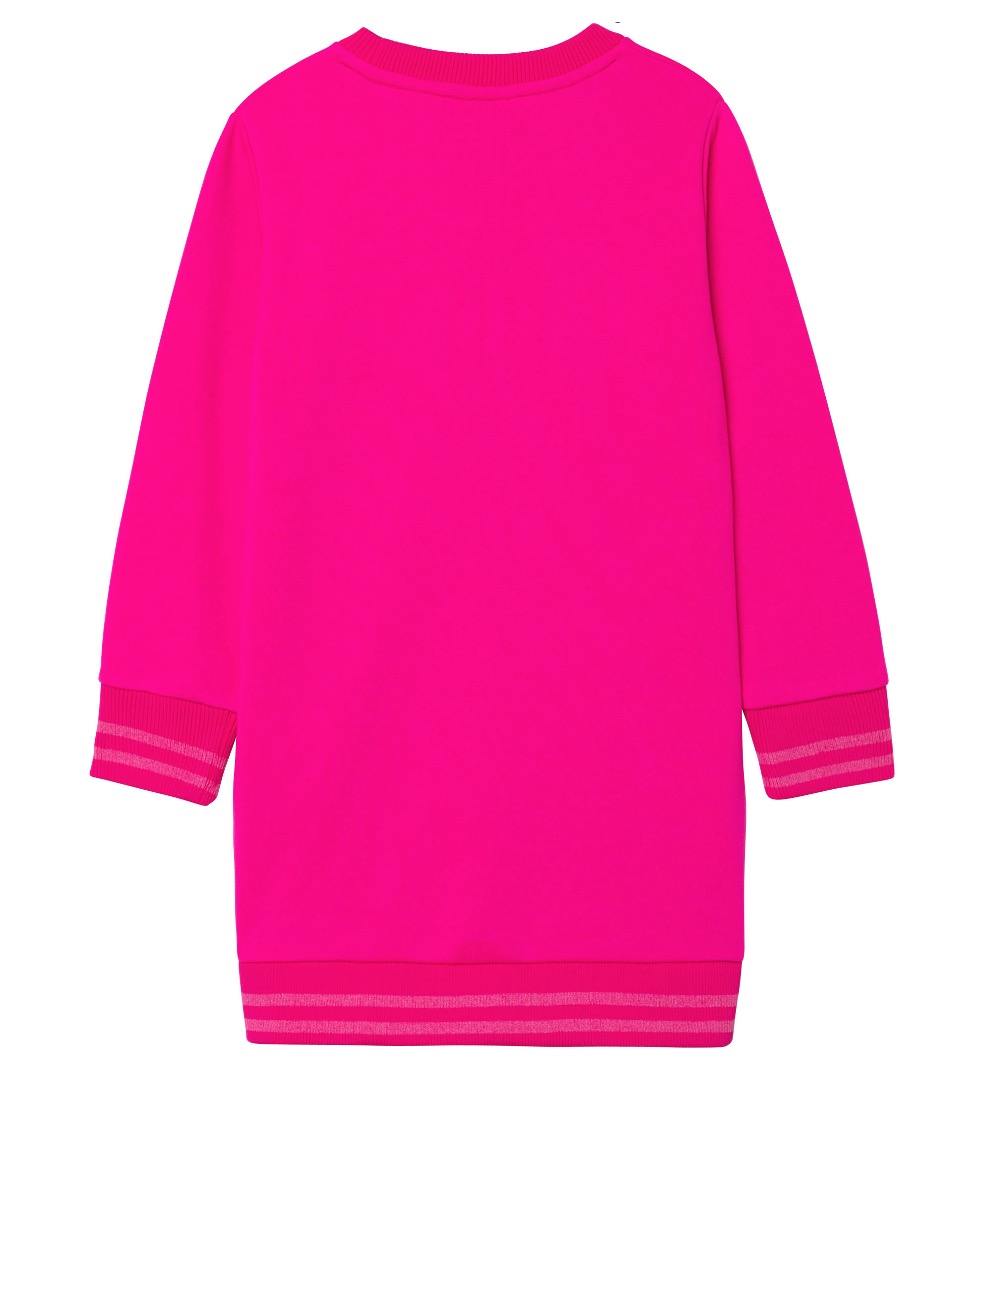 Billieblush_Sweatkleid_pink_Mädchen_Grimms_glueckskinder_fashion363.jpg